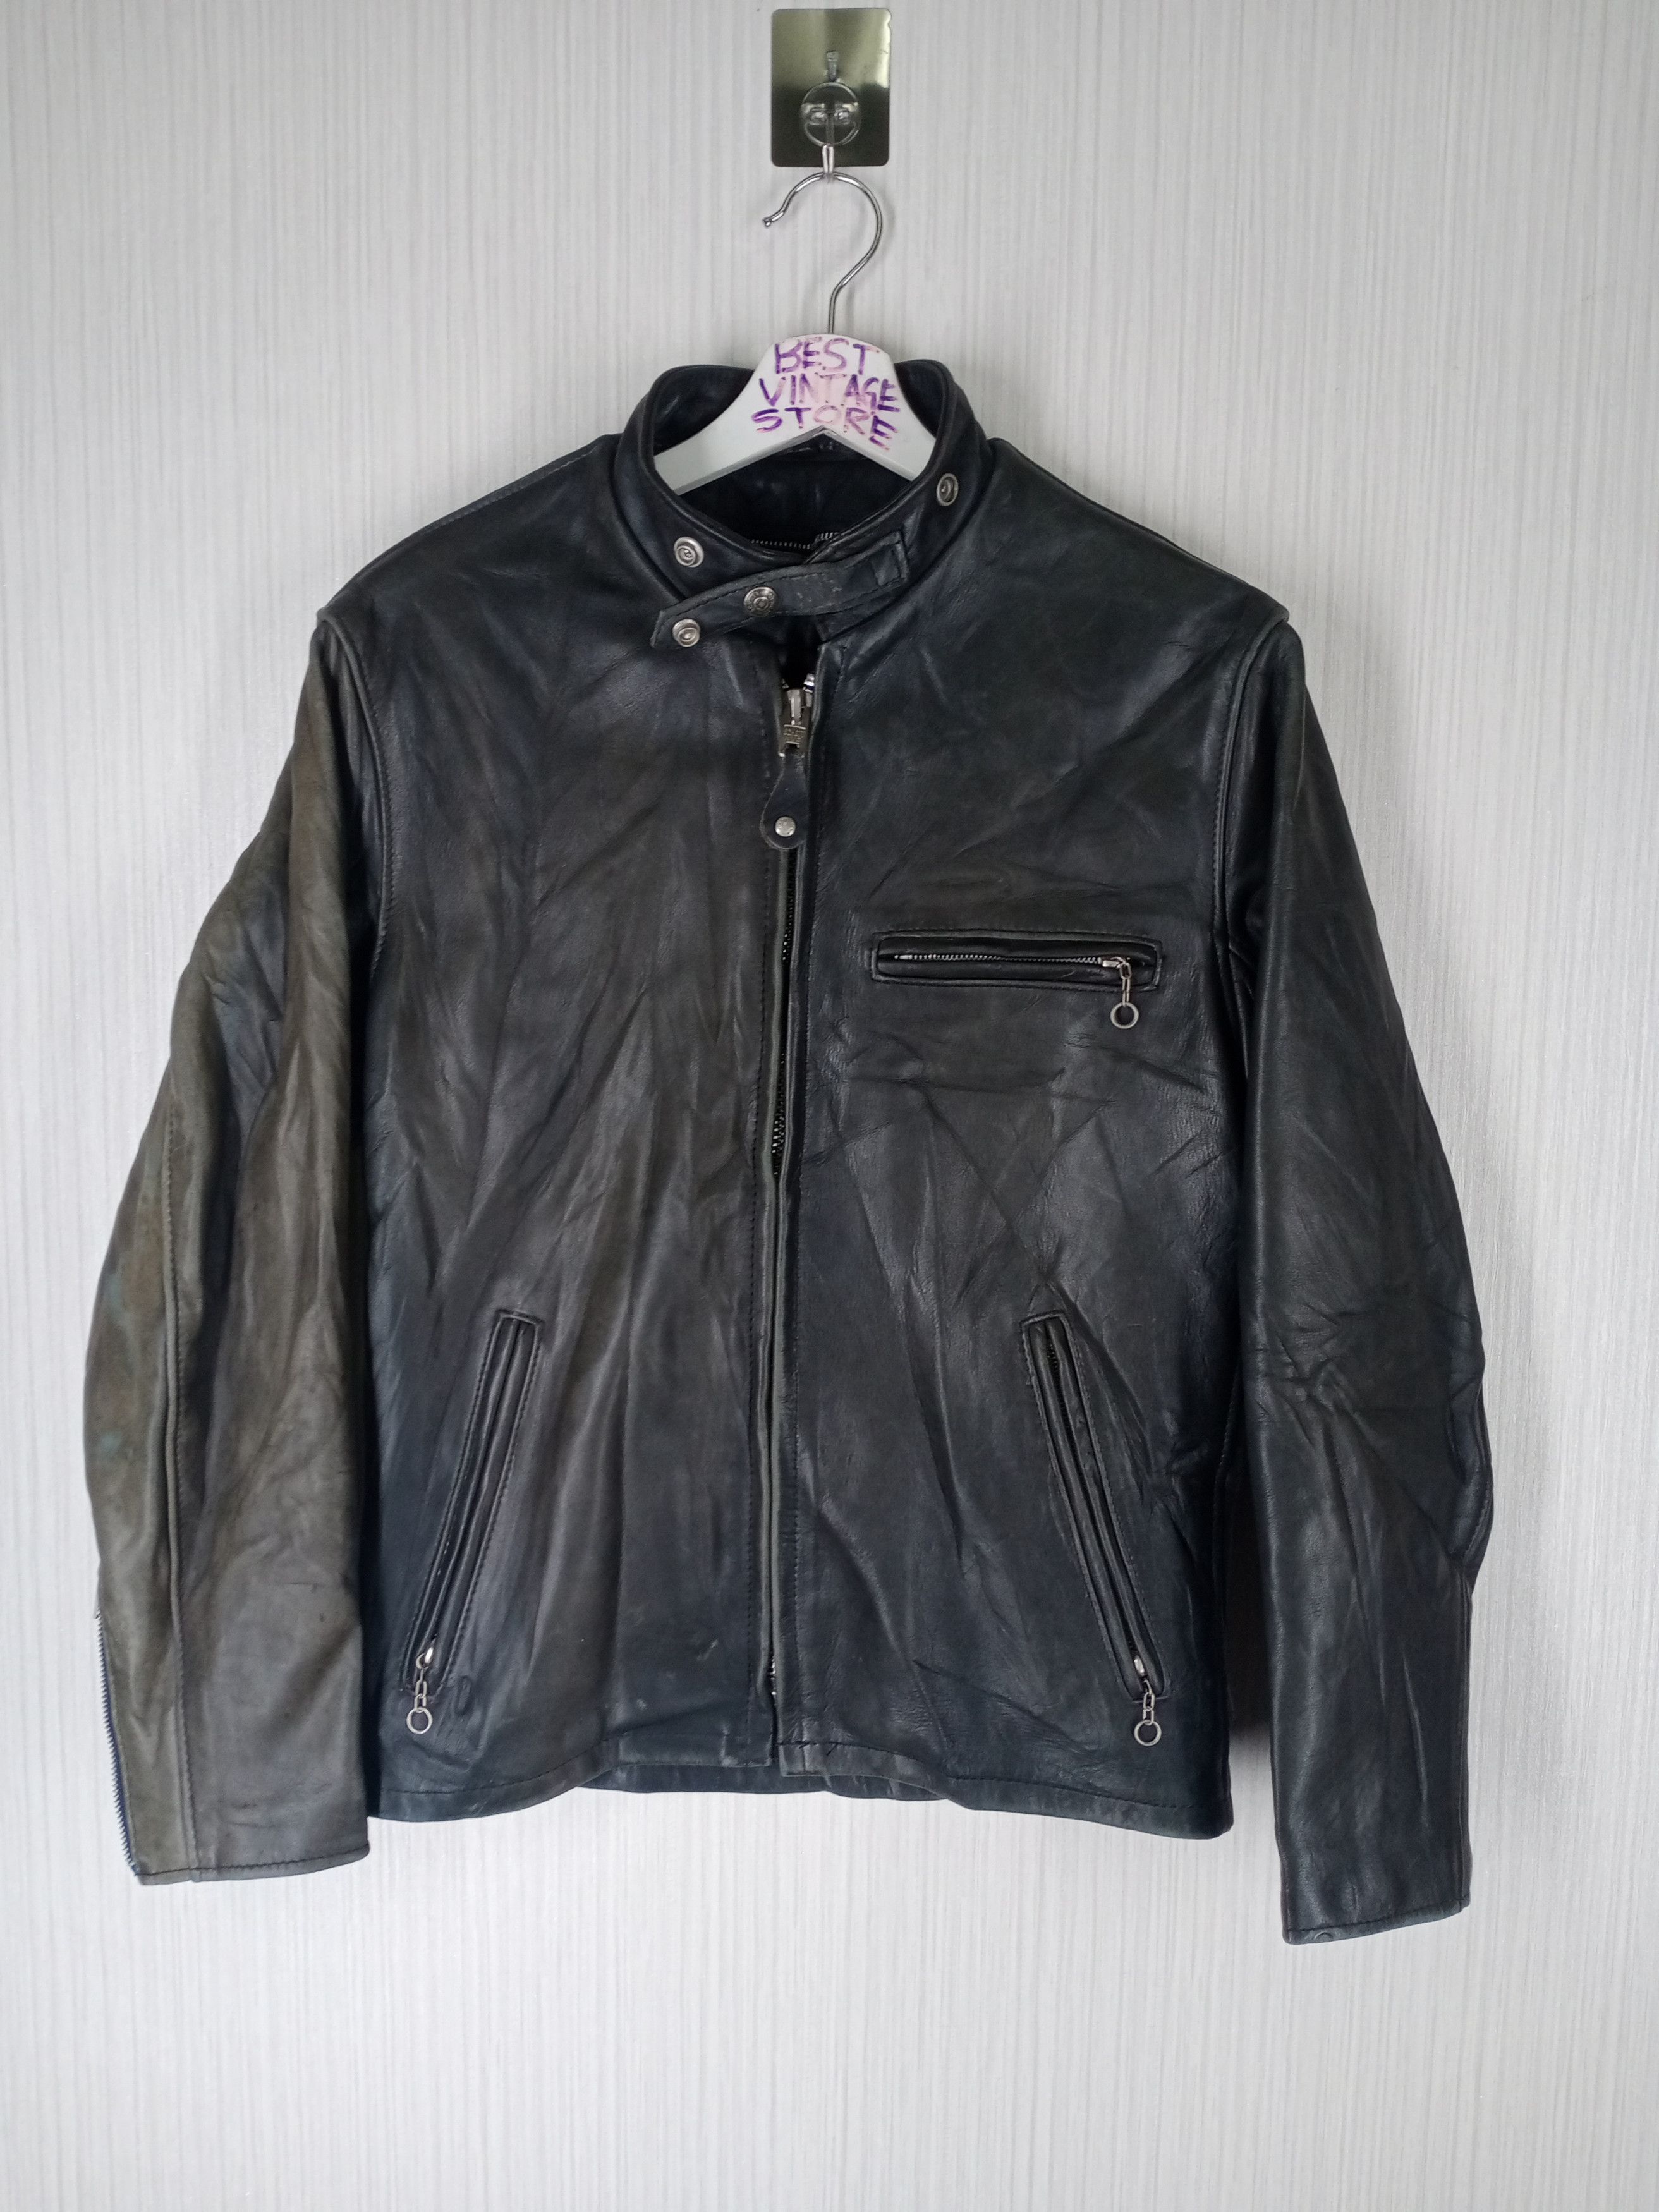 Pre-owned Leather Jacket X Schott Vintage Schott N.y.c. Men Leather Biker Style Sun Faded In Black